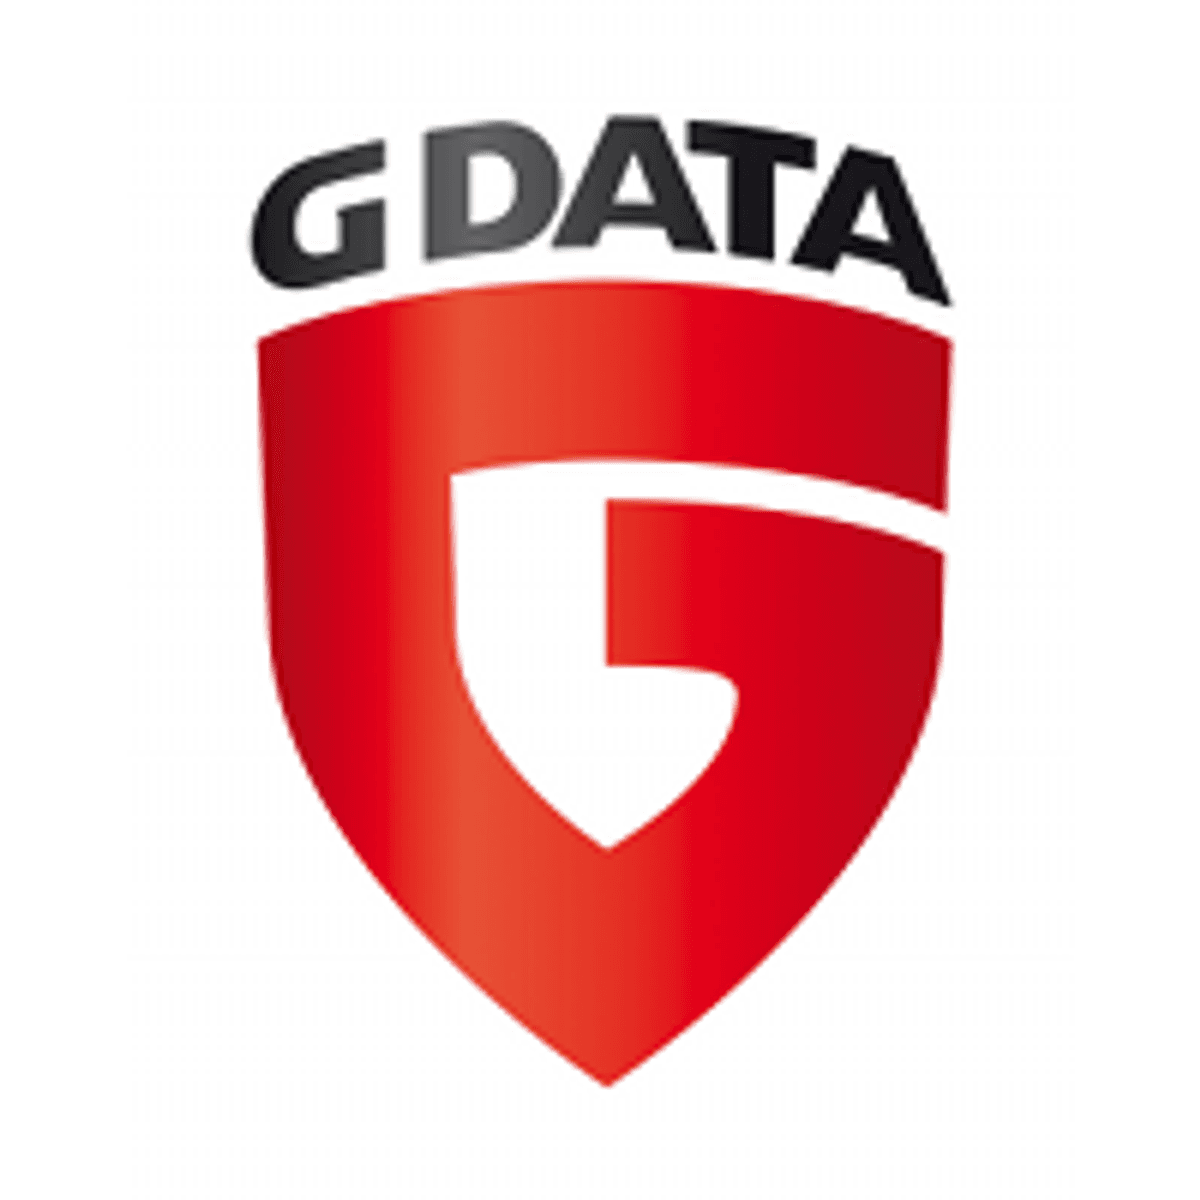 G DATA viert 33e verjaardag met een speciale editie image